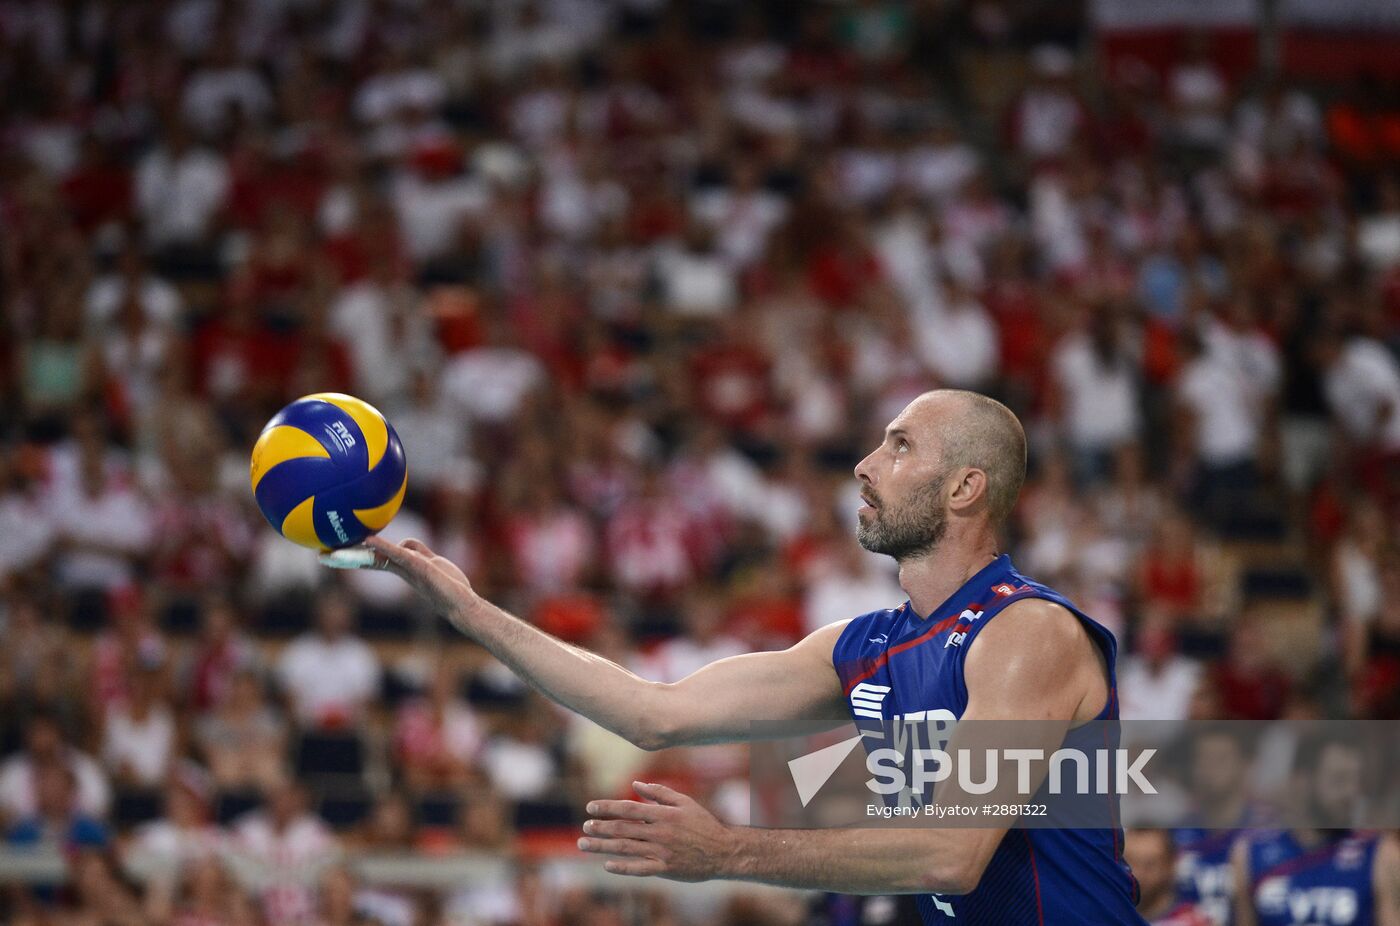 FIVB Volleyball World League 2016. Men. Poland vs. Russia